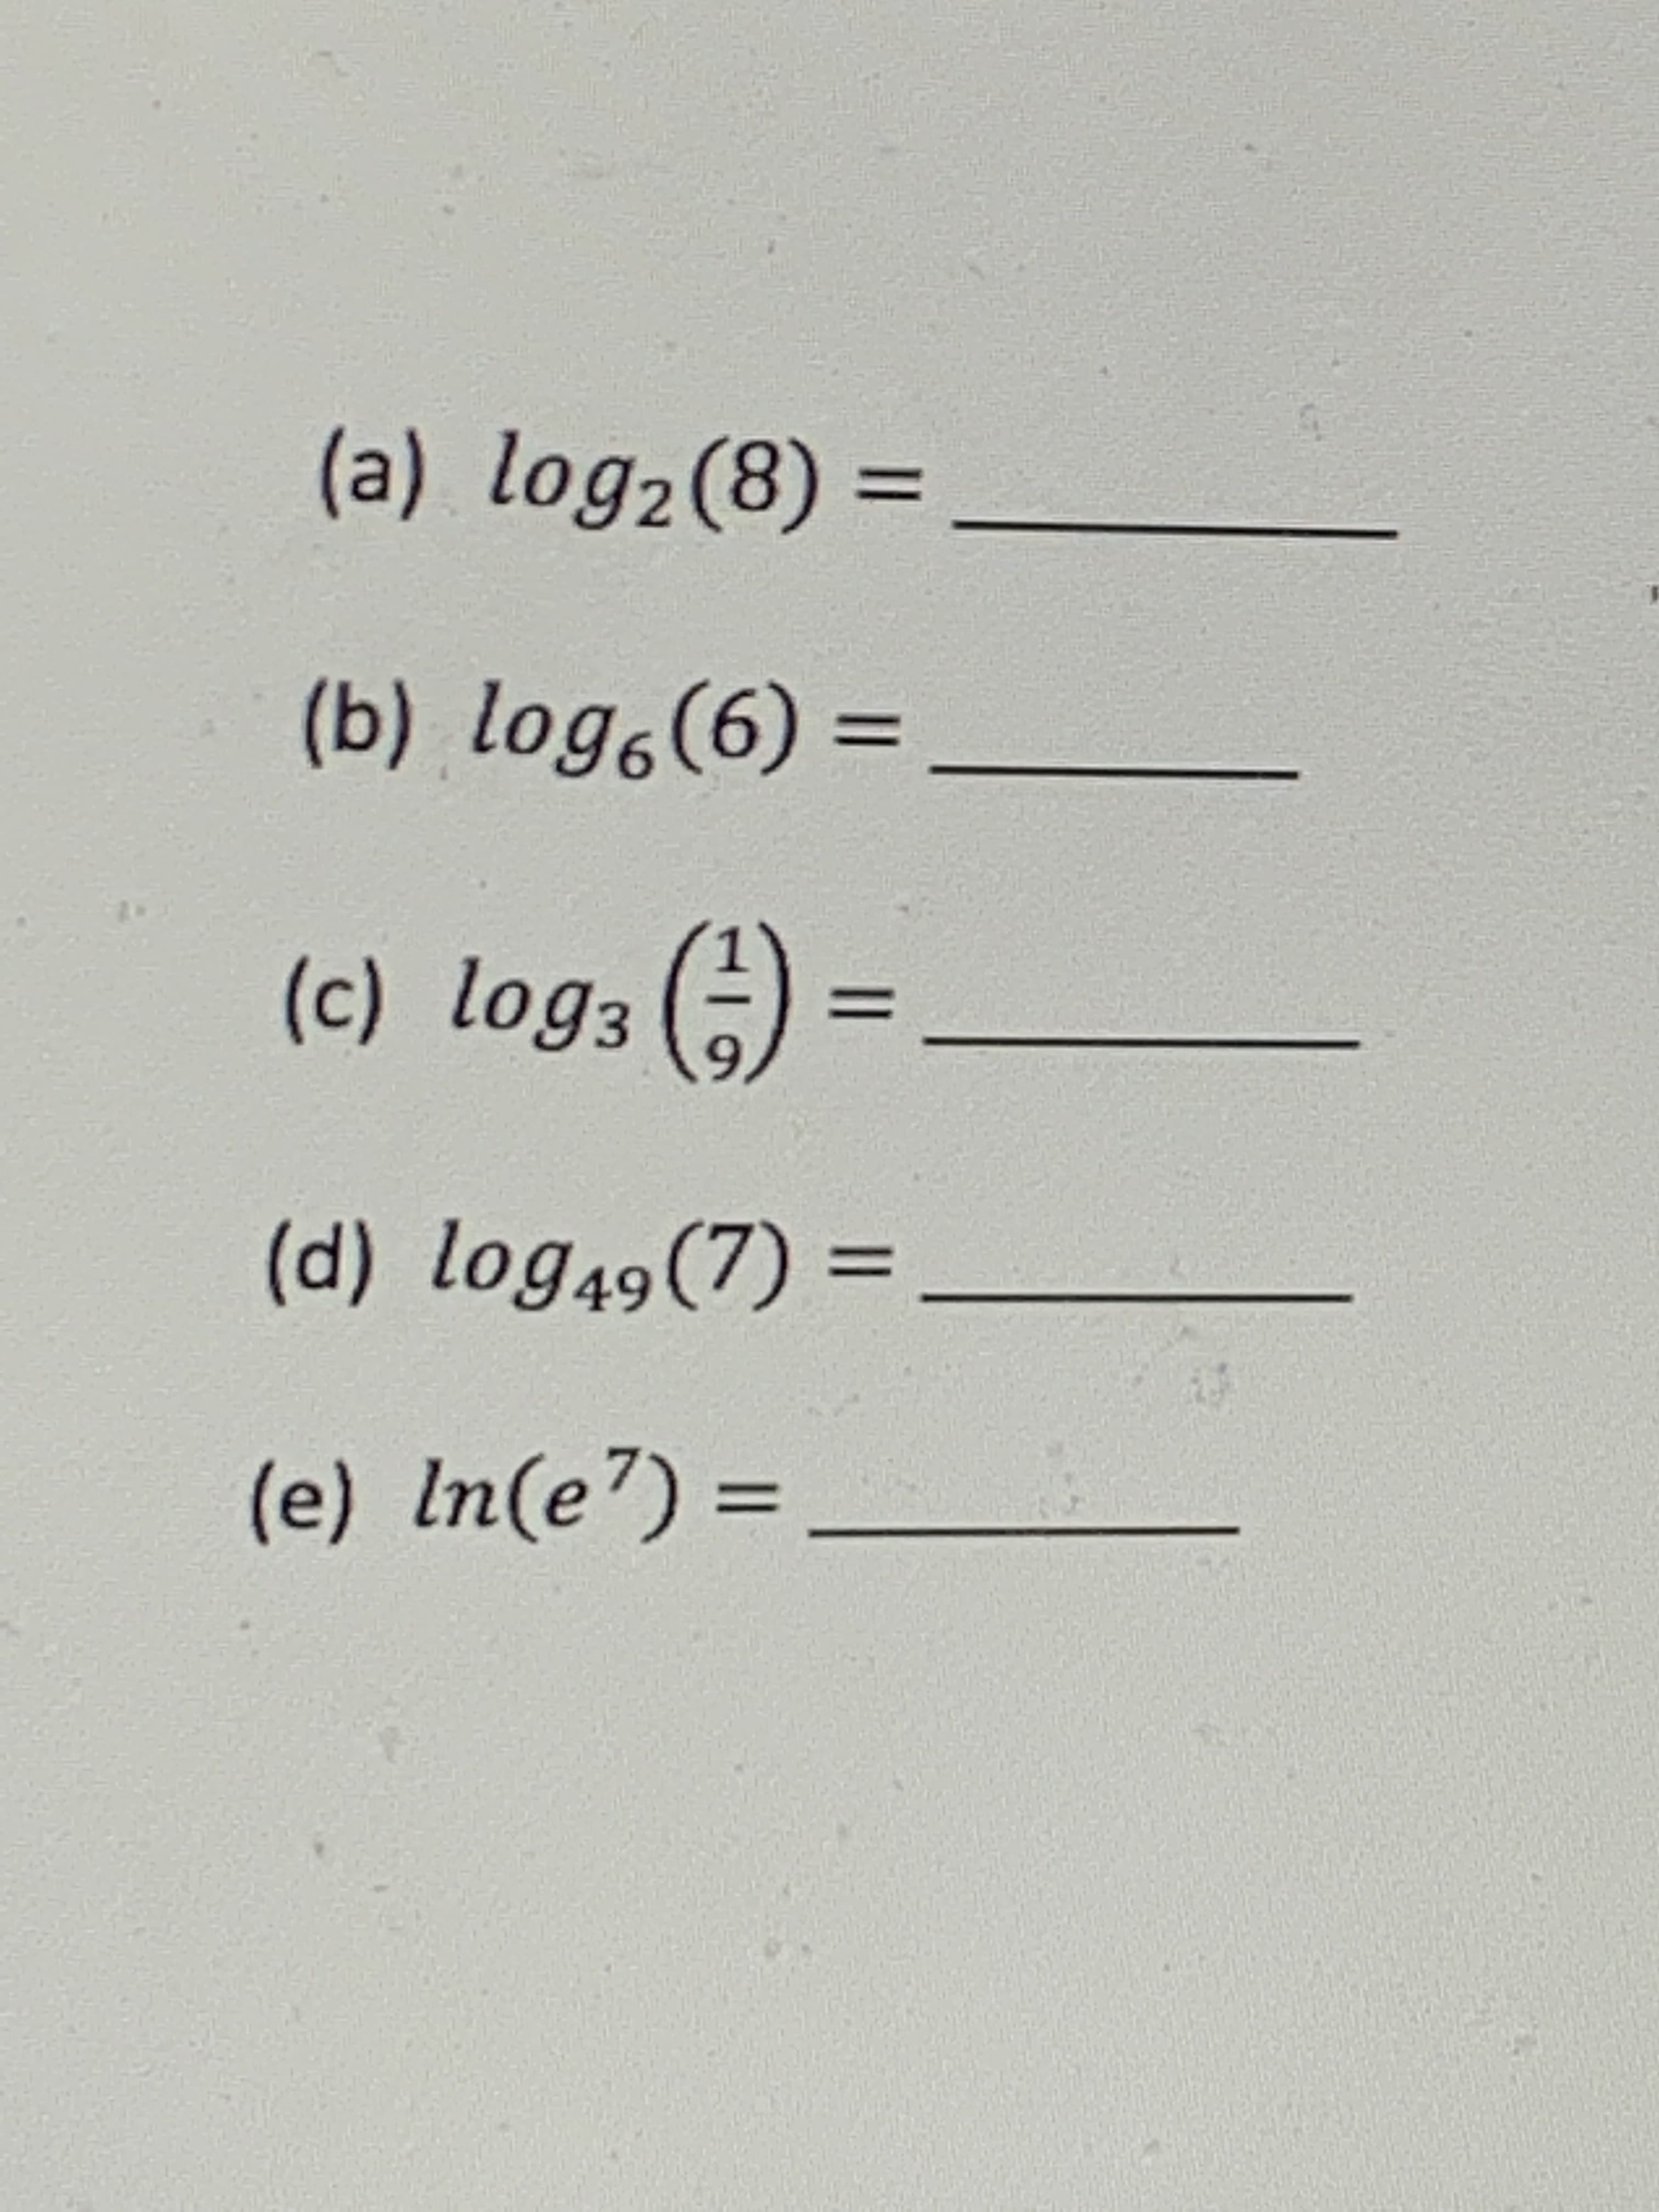 3()
og3
6o1 ()
1.
= (9)°601 (q)
%3D
loge
%3D
(a) log2(8) =
